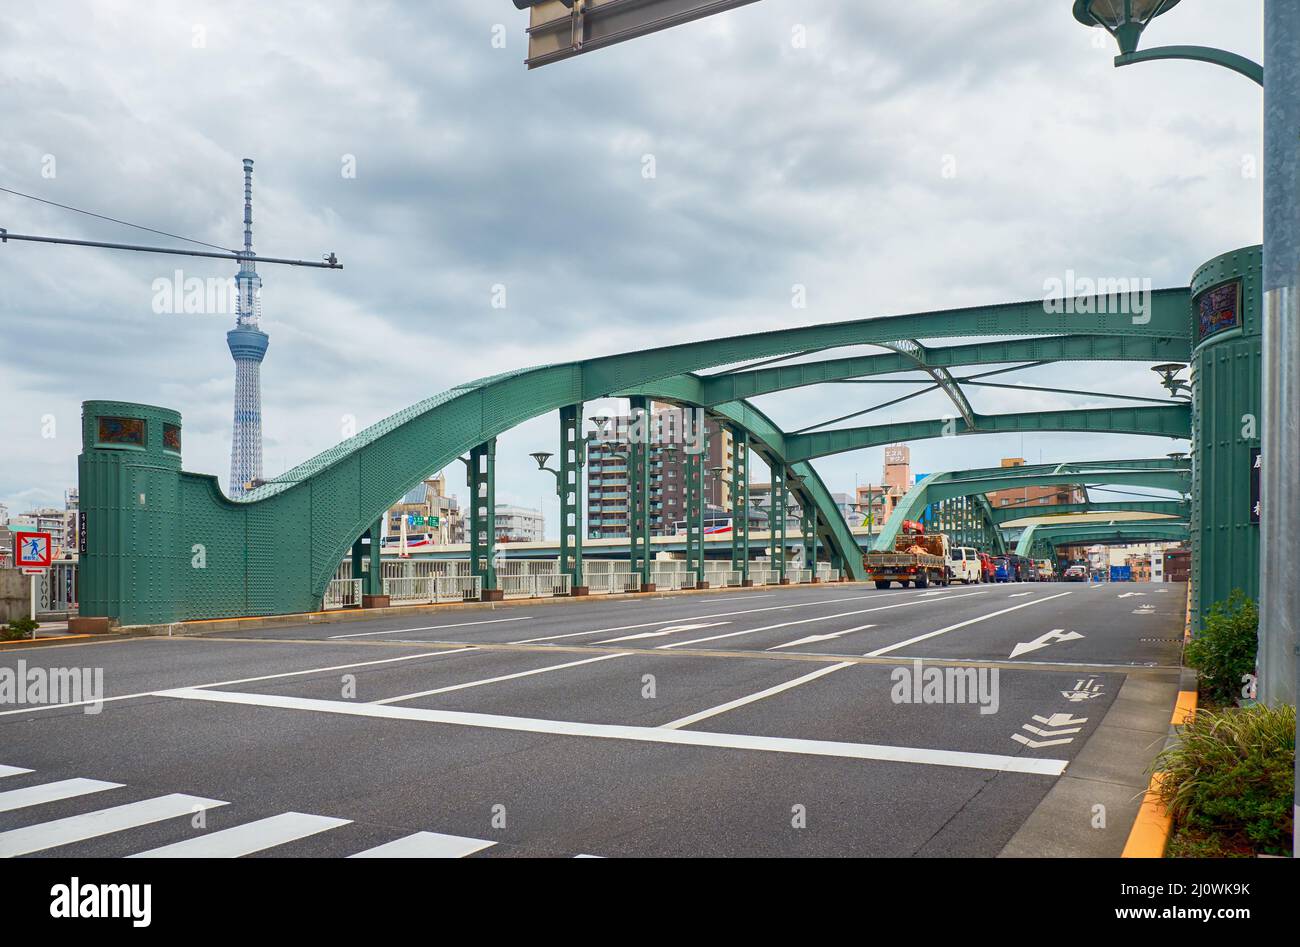 Umayabashi or the Umaya Bridge, spanning the Sumida River. Tokyo Stock Photo